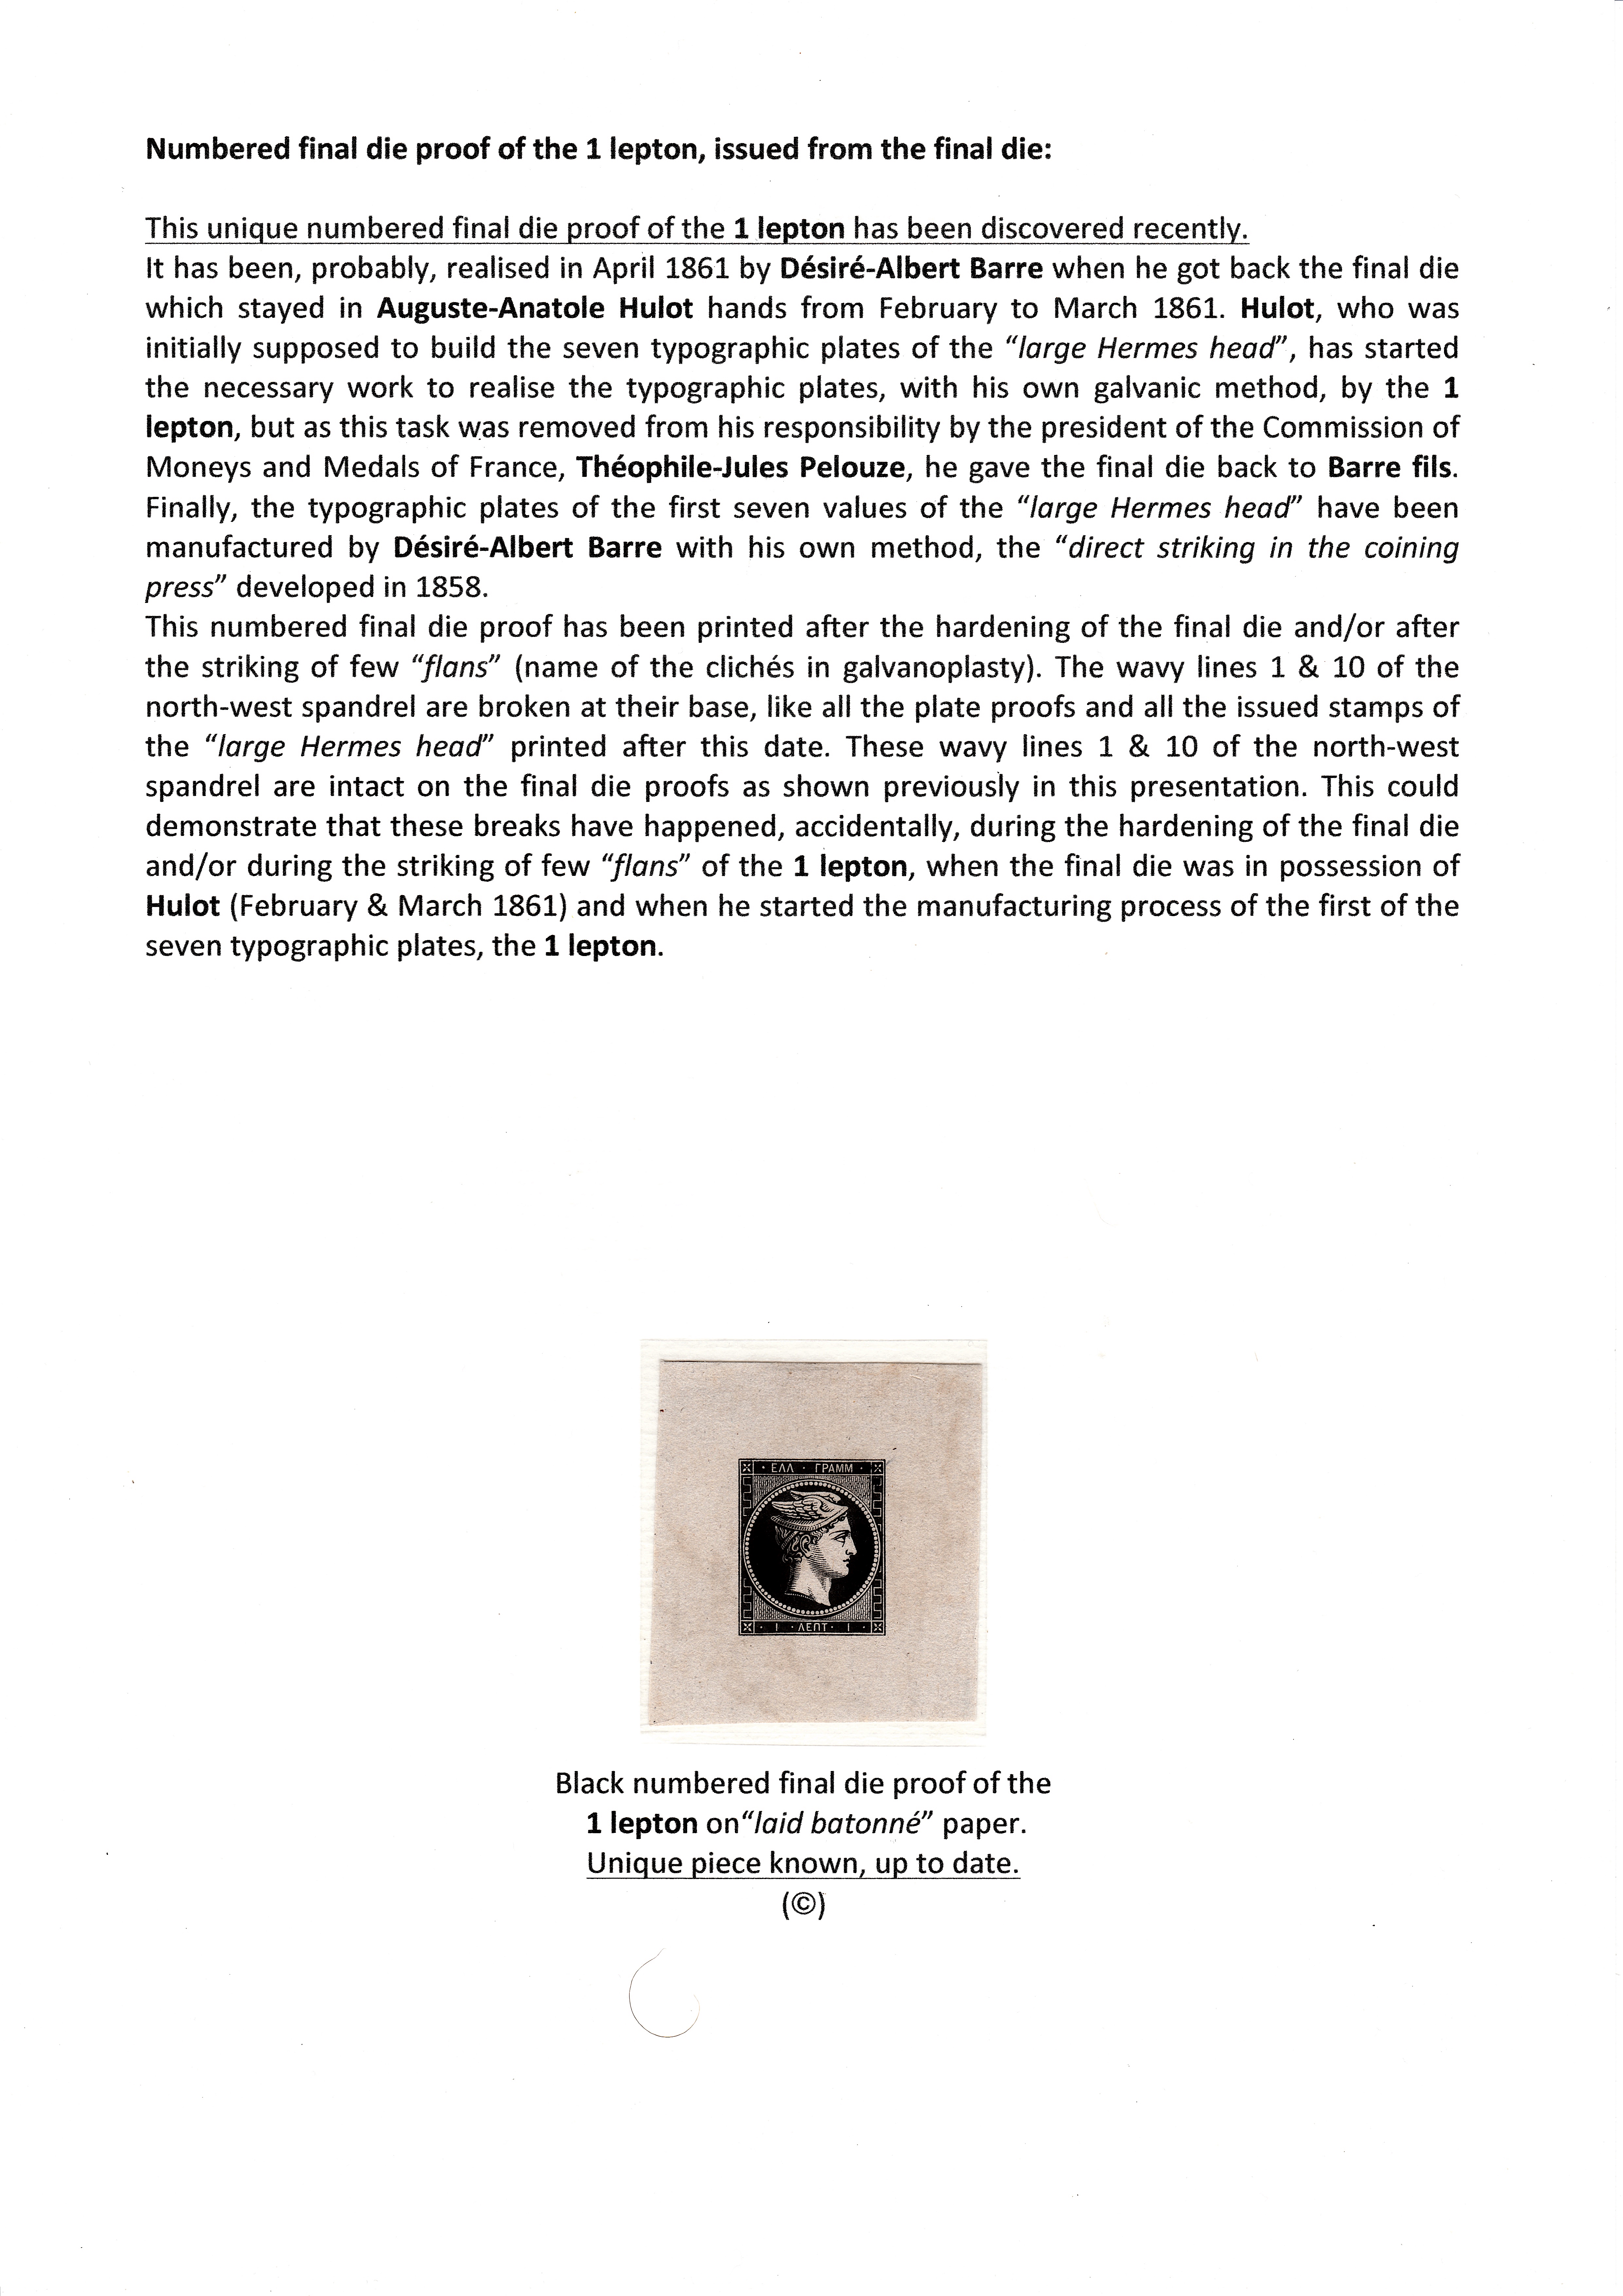 La fabrication et l���utilisation postale des tirages de Paris de la grosse t��te d���Herm��s de Gr��ce��� p. 11